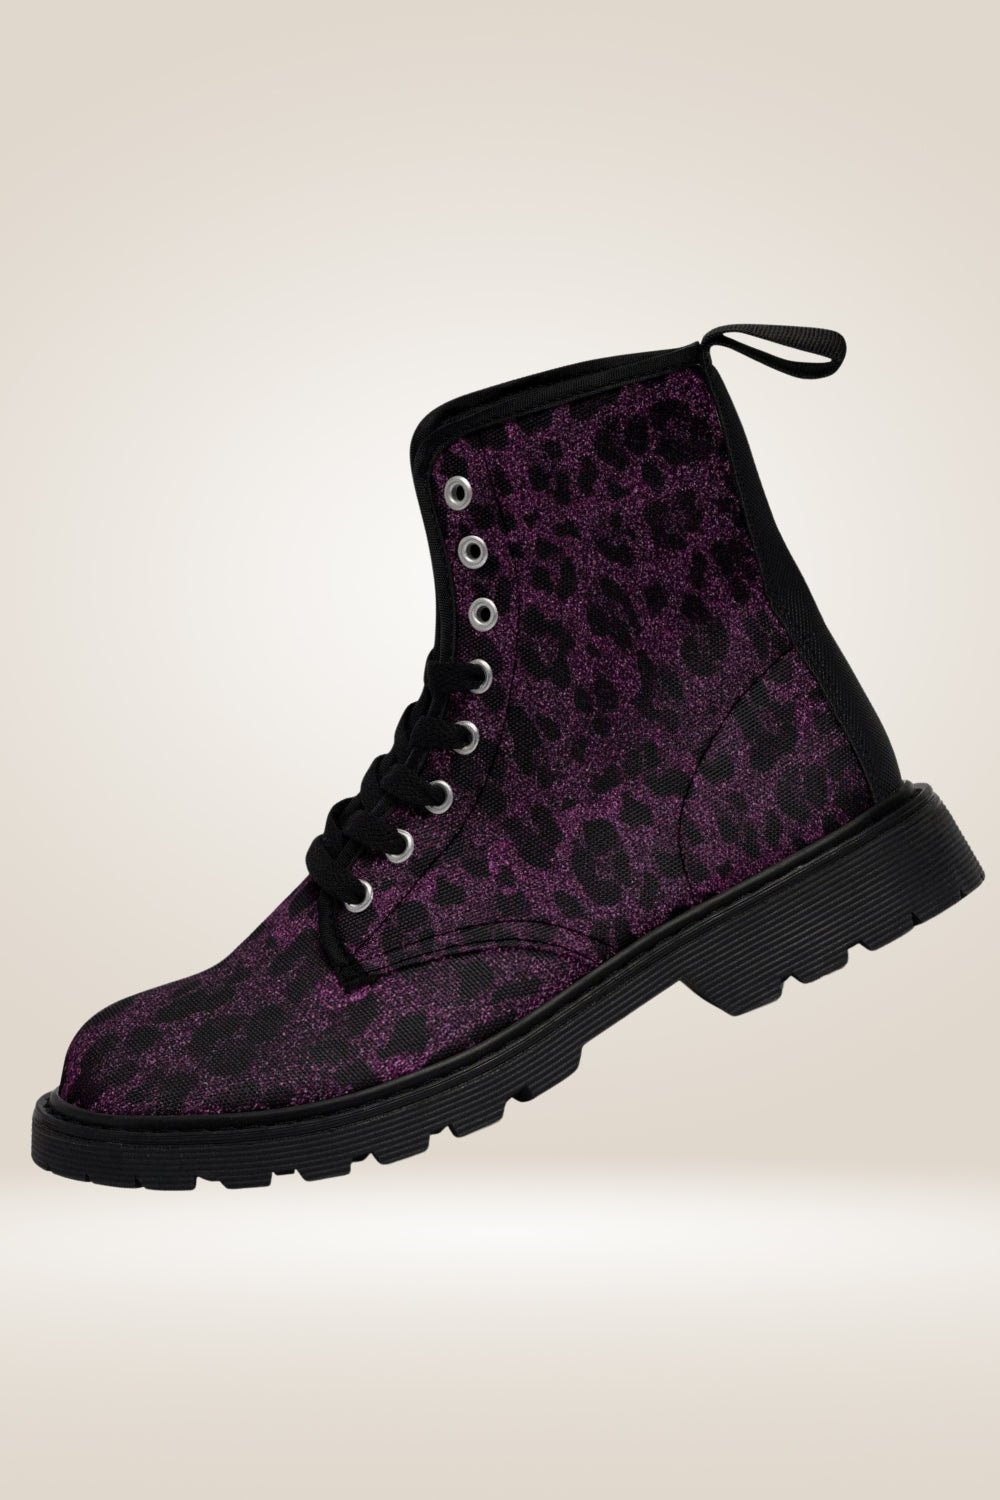 Glitter Print Purple Combat Boots - Black Sole - TGC Boutique - Combat Boots